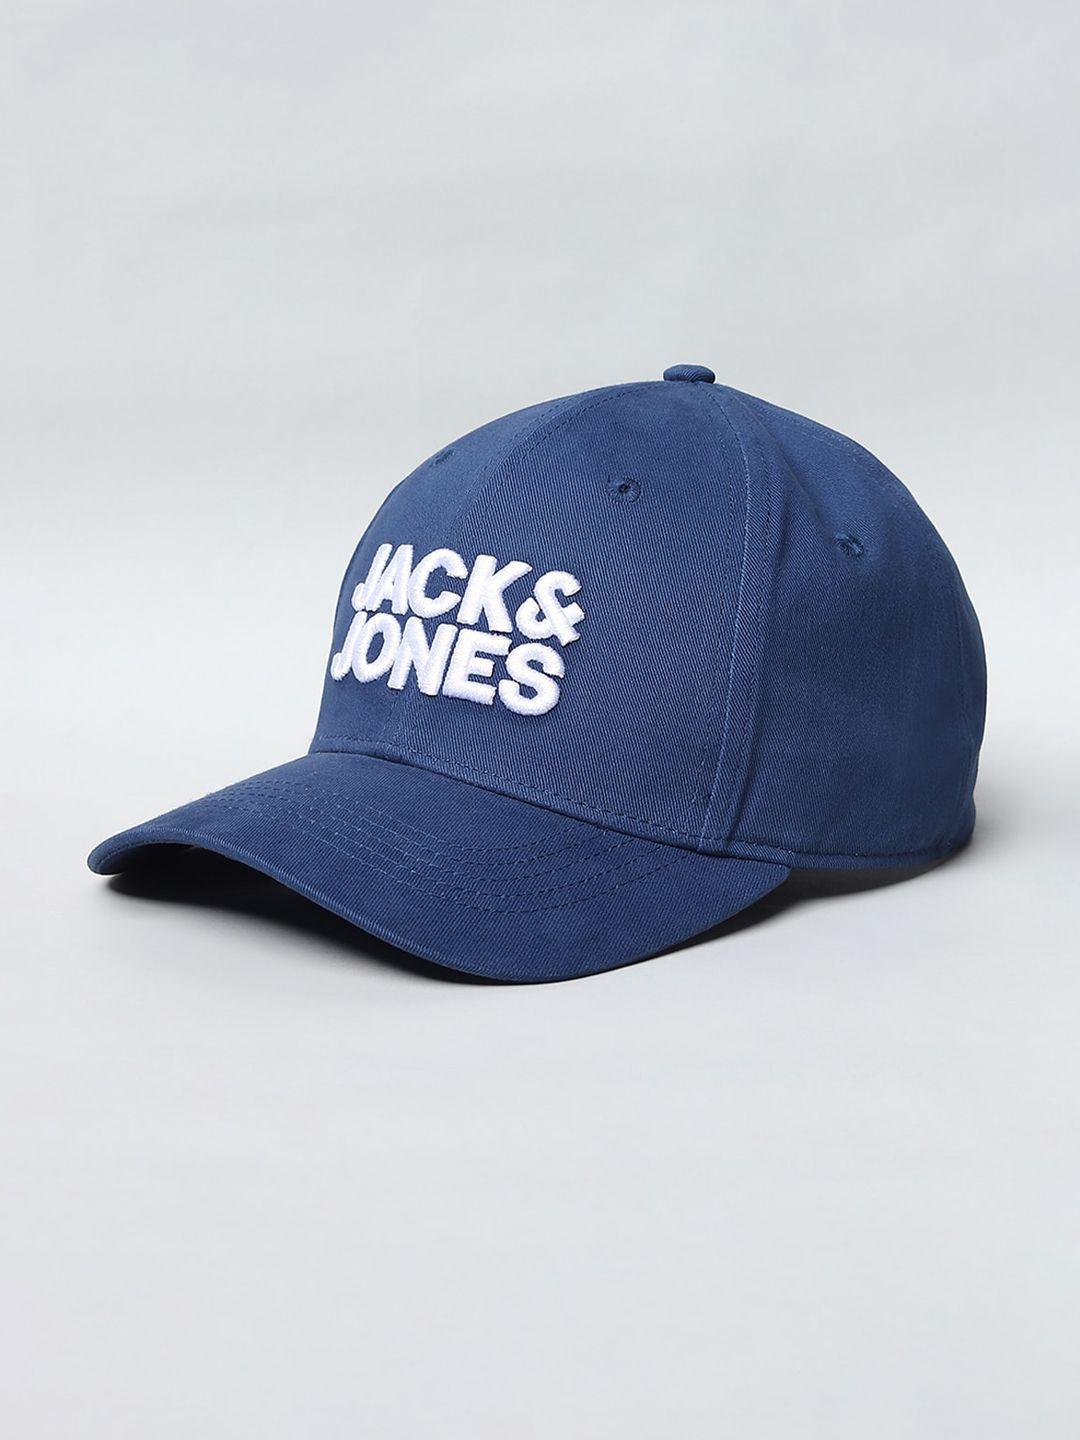 jack-&-jones-men-navy-blue-&-white-embroidered-baseball-cap